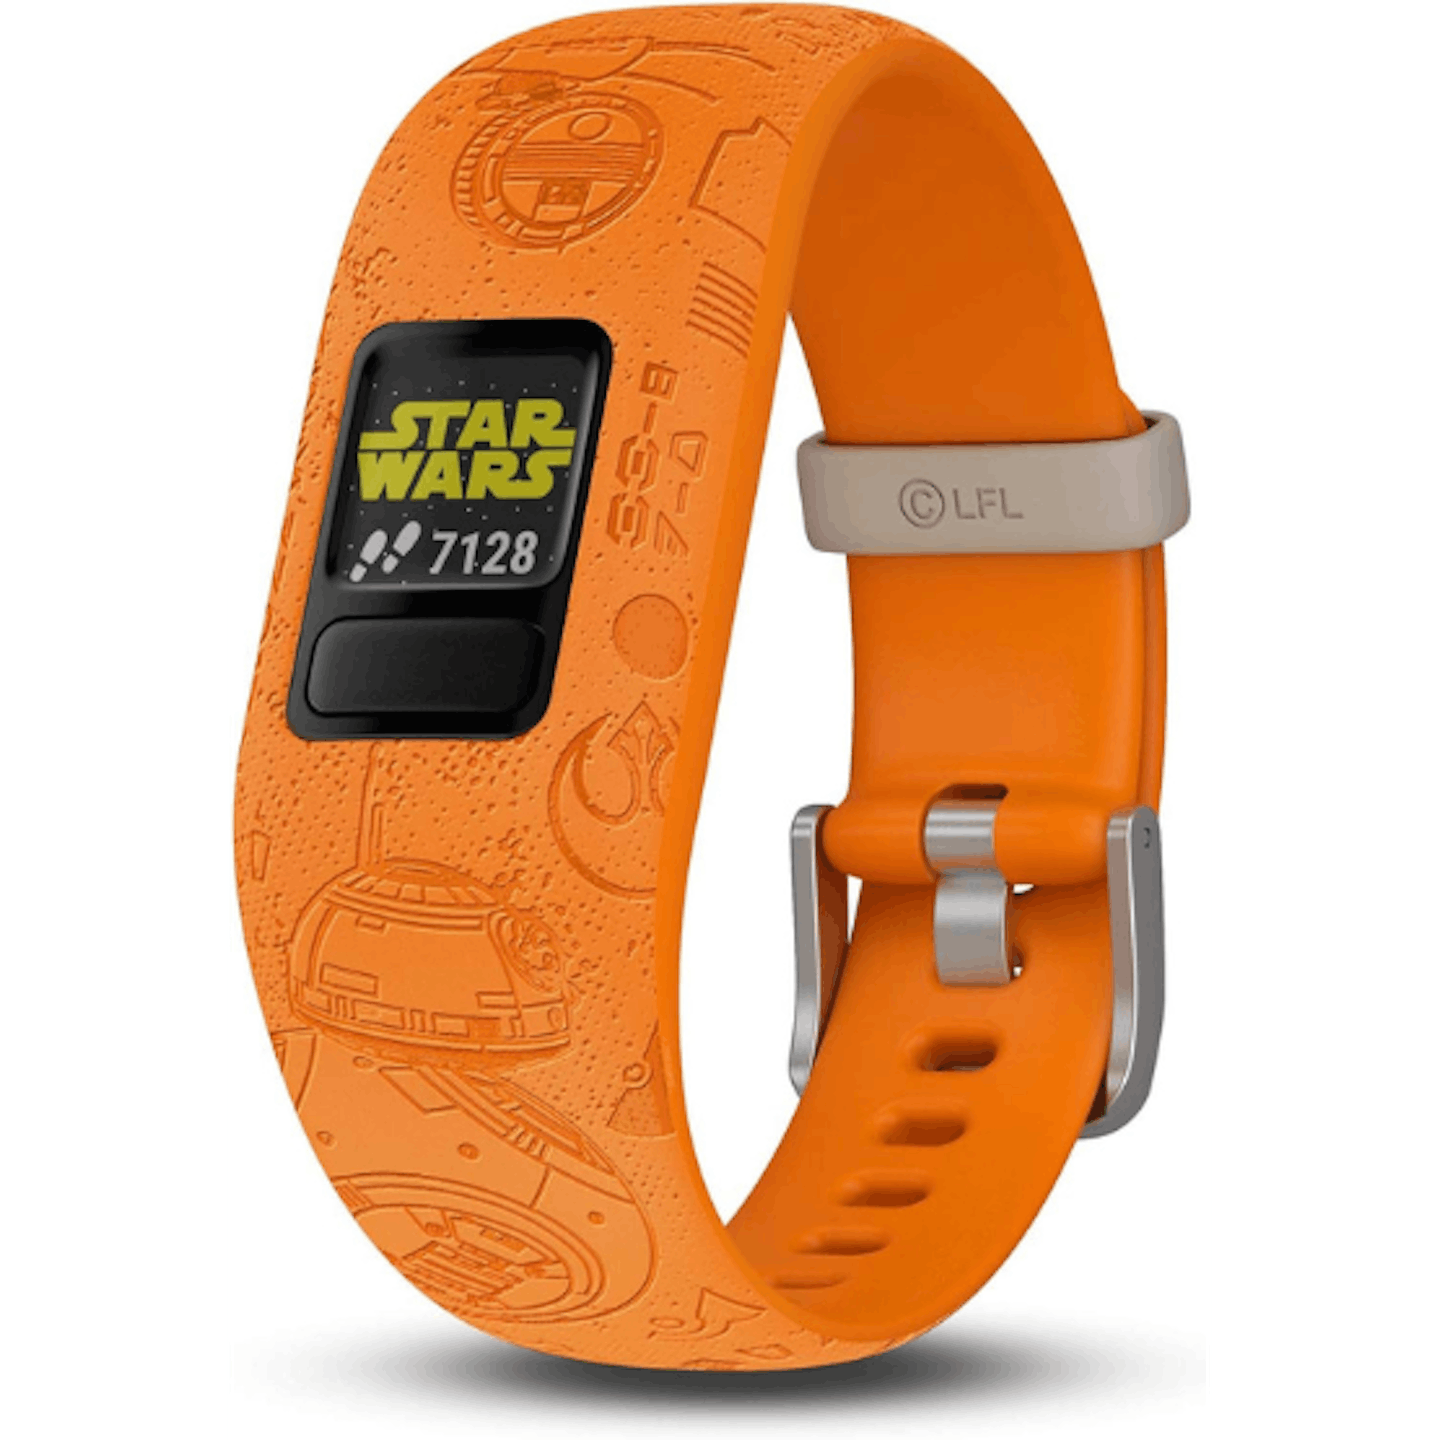 Starwars smart watch